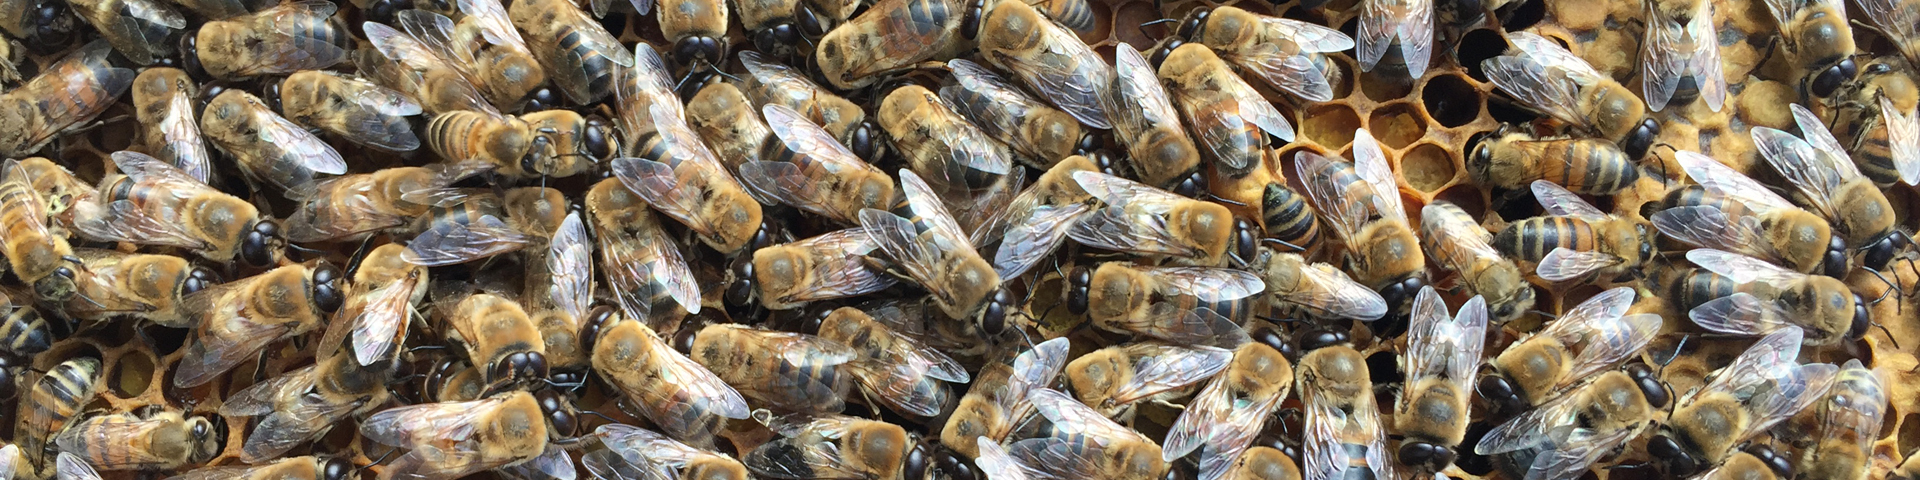 Drohnen im Bienenvolk ein Bestandteil der Bienen